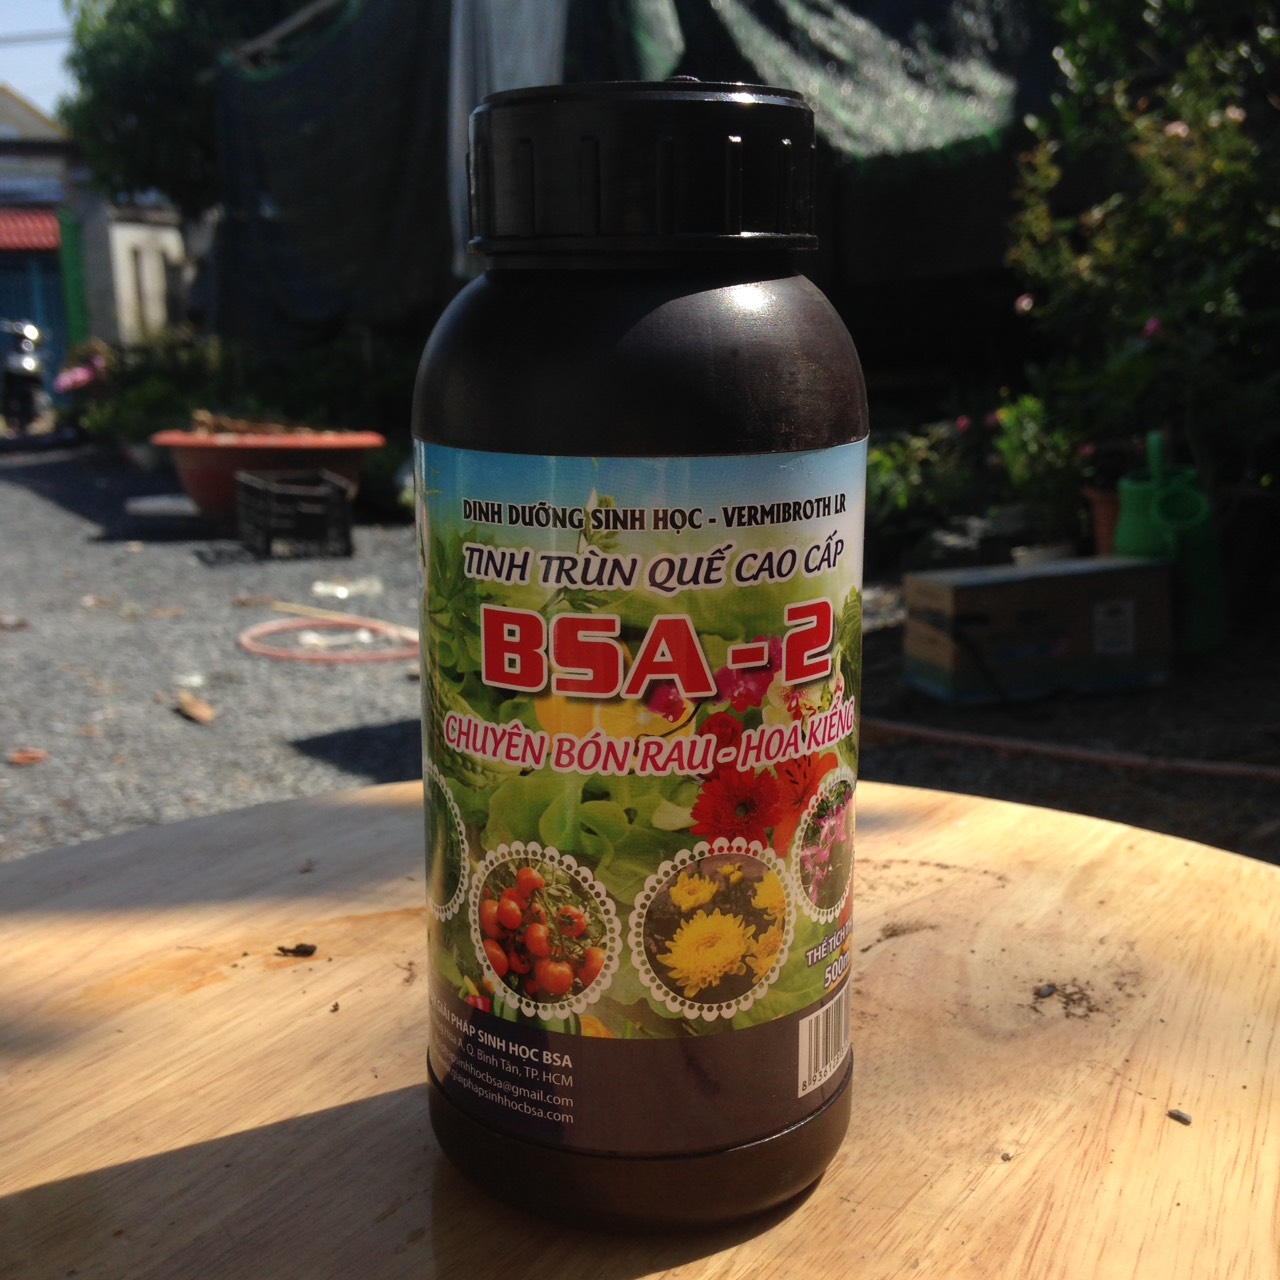 Chai 500ml dinh dưỡng sinh học chuyên dụng dành cho tưới, phun RAU- HOA KIỂNG chiết xuất từ tinh Trùn Quế cao cấp BSA-2